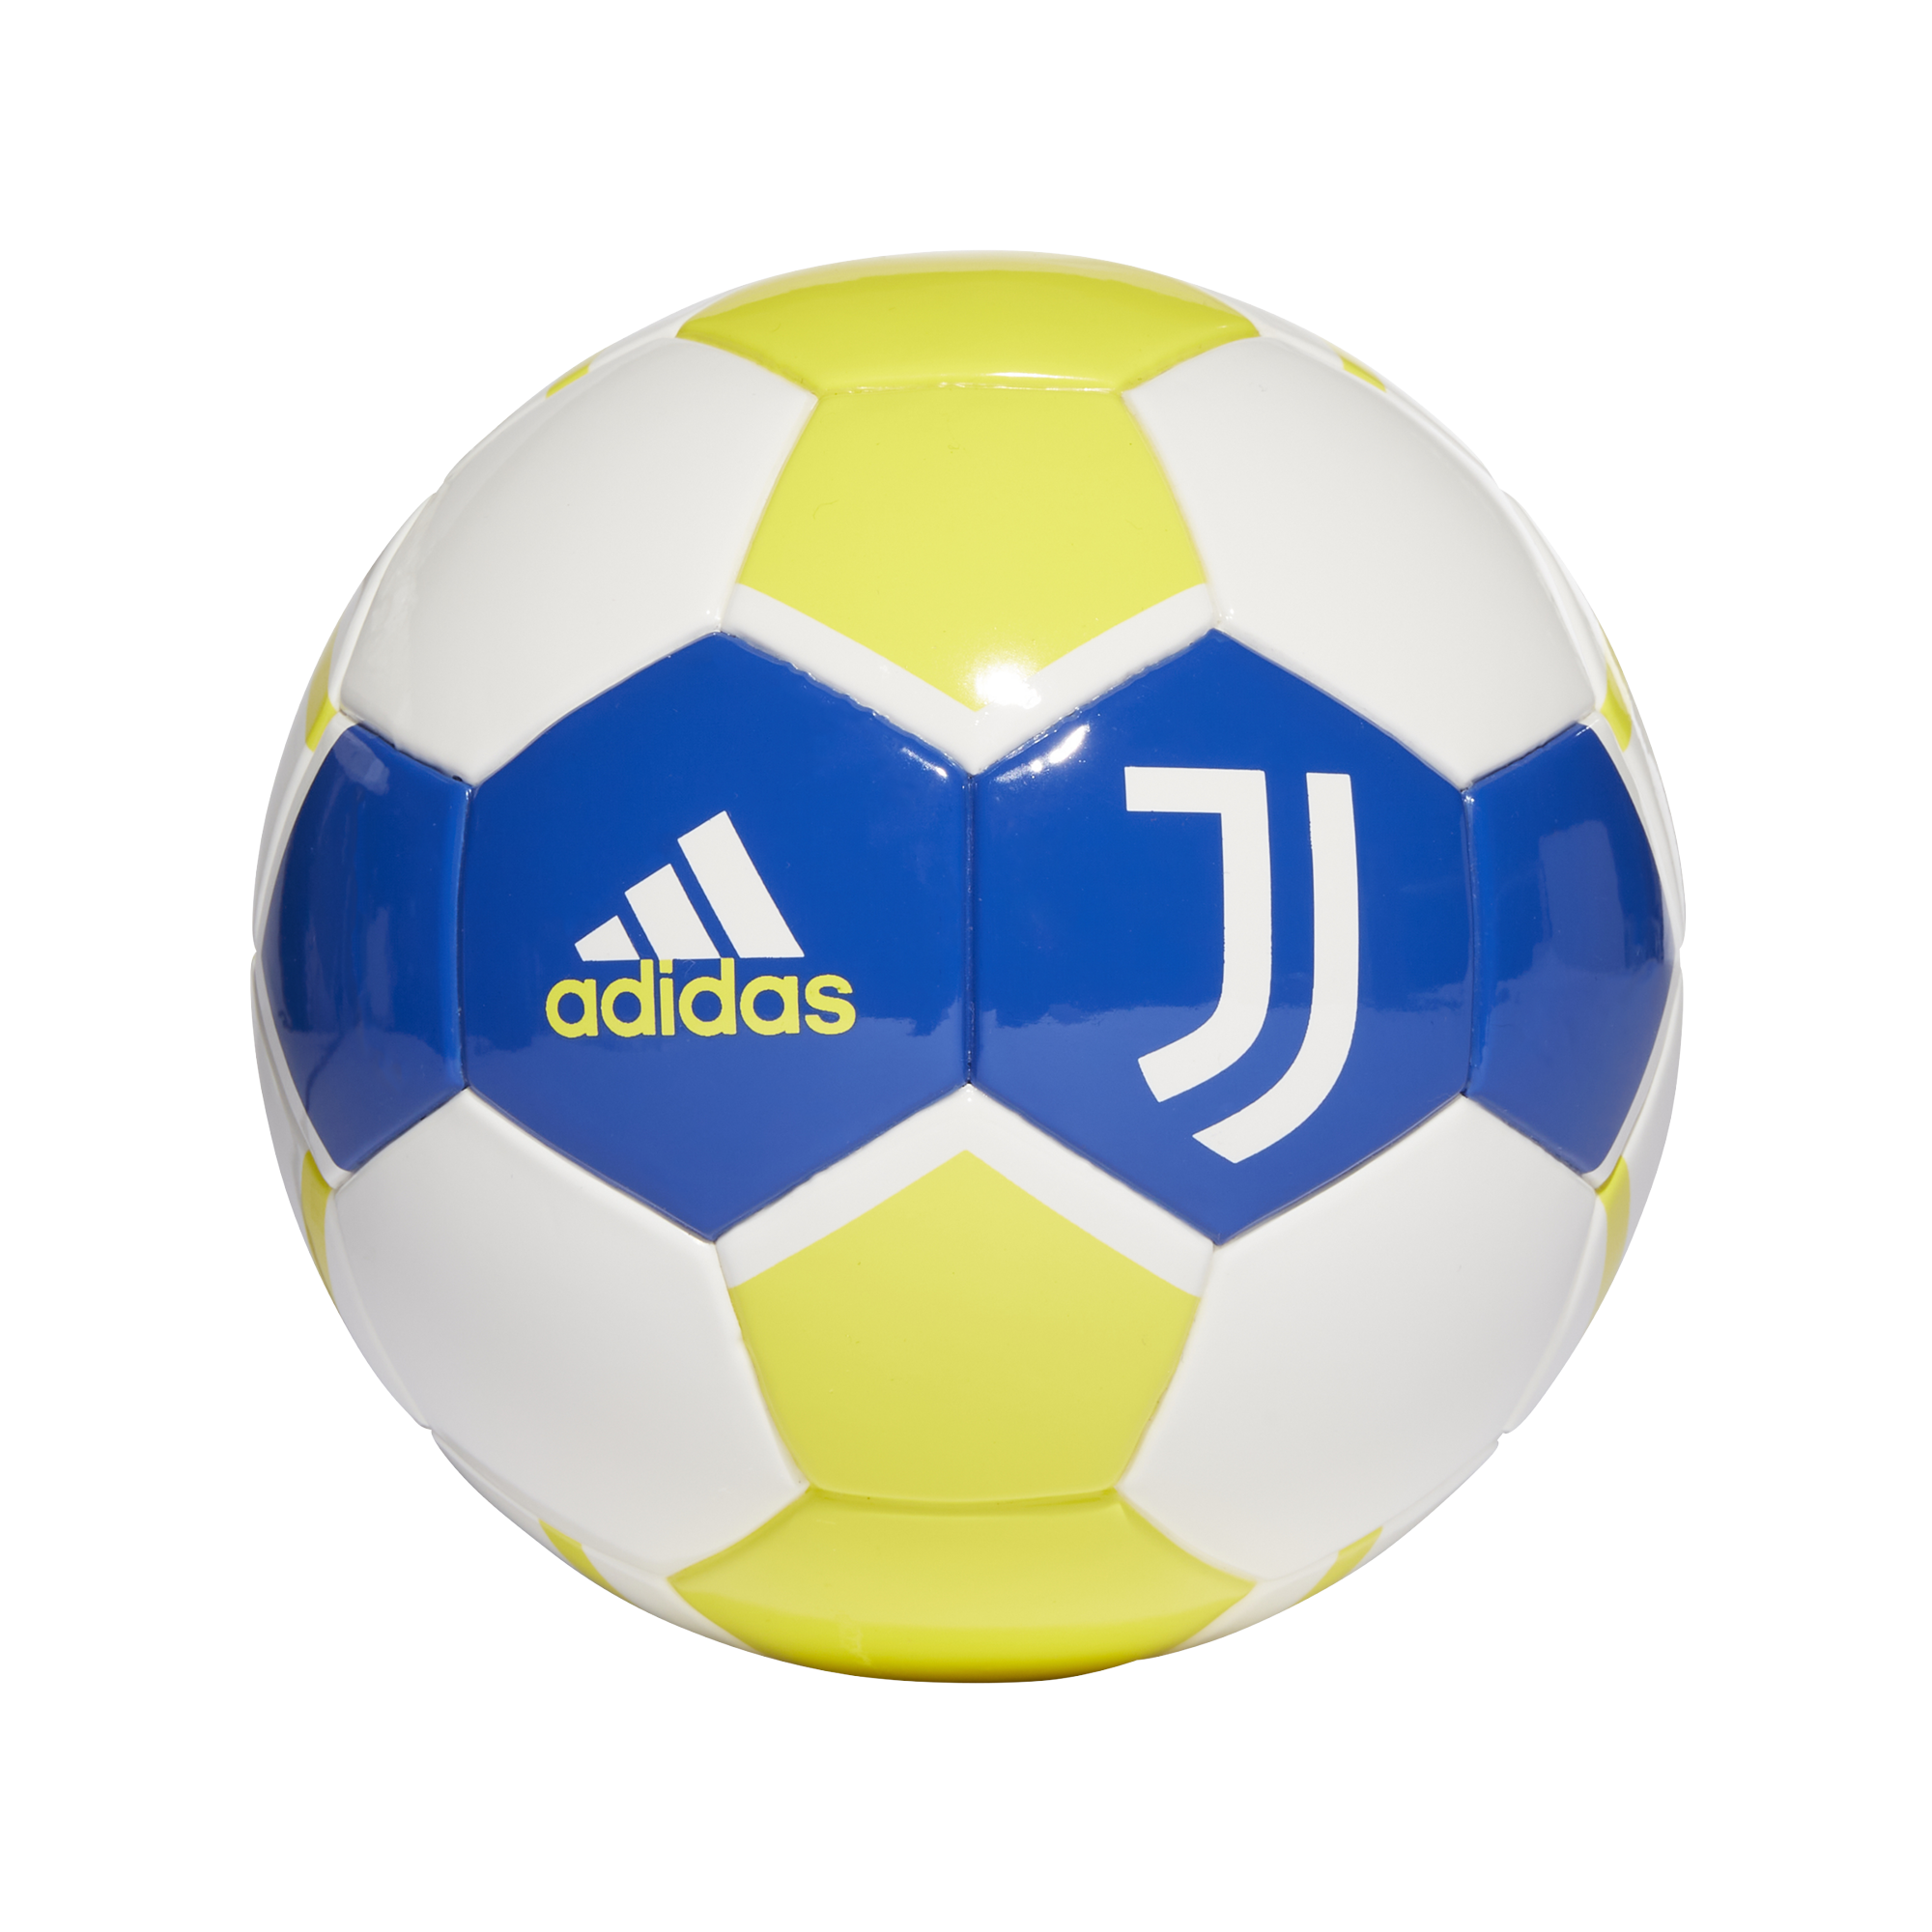 Adidas Juventus FC 3rd žlutá/modrá/bílá Uk 1